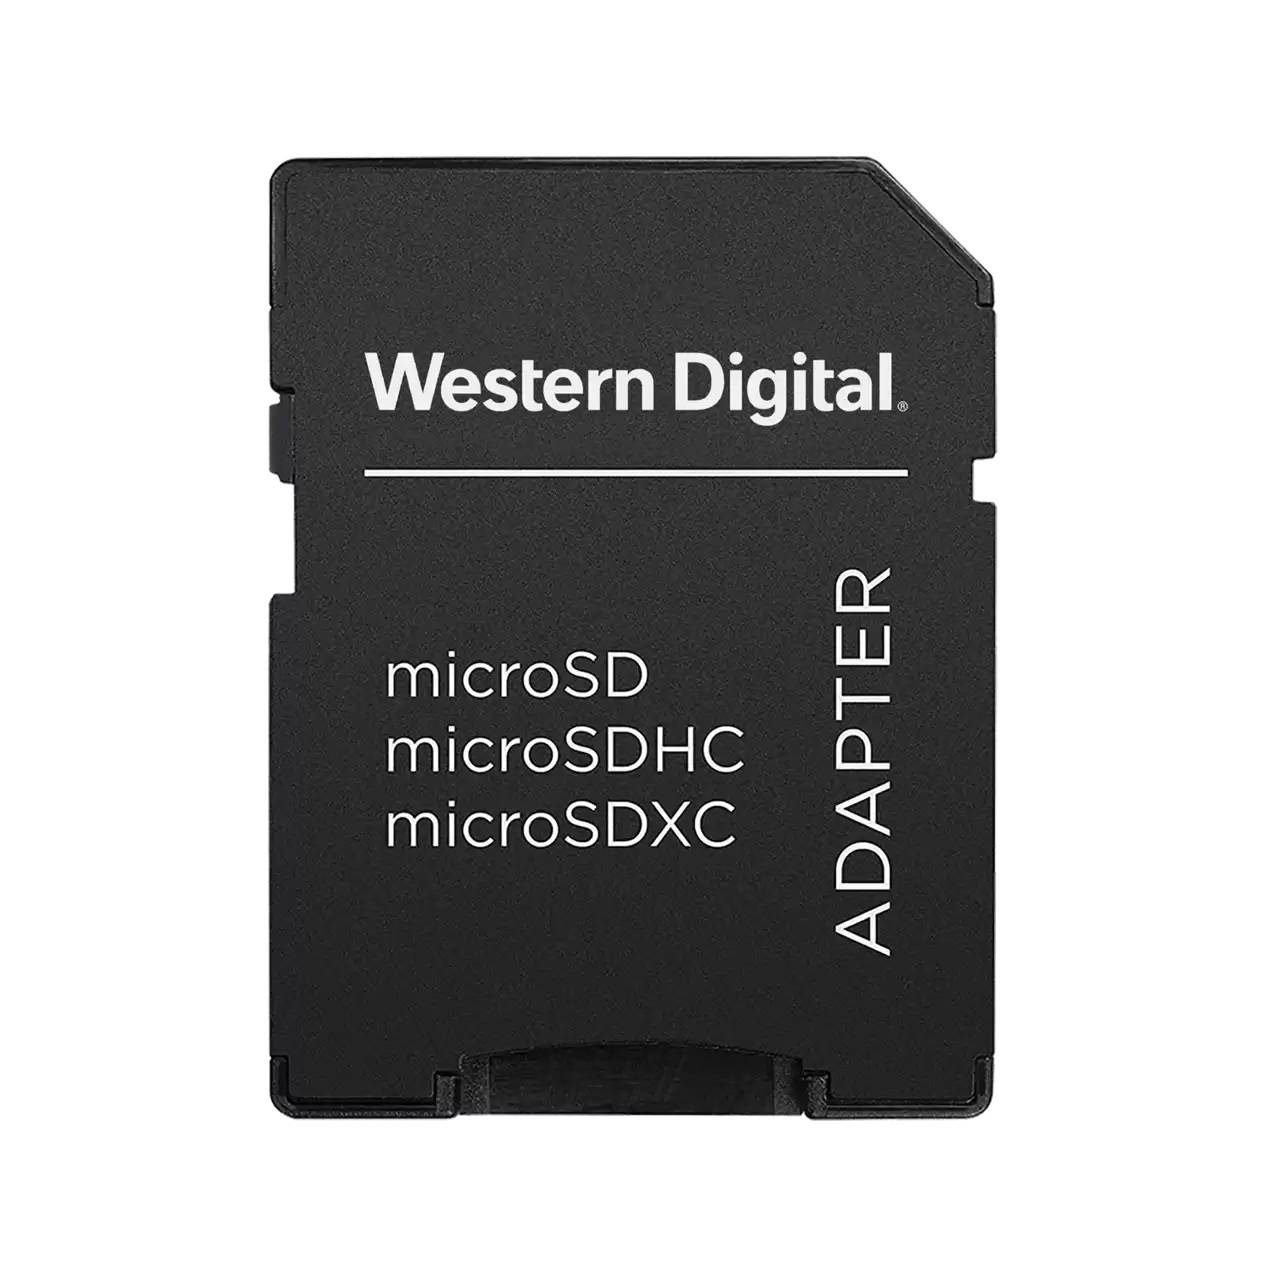 Western Digital WDDSDADP01 adaptrar för SIM-/flash-minneskort Flash-kortadapter